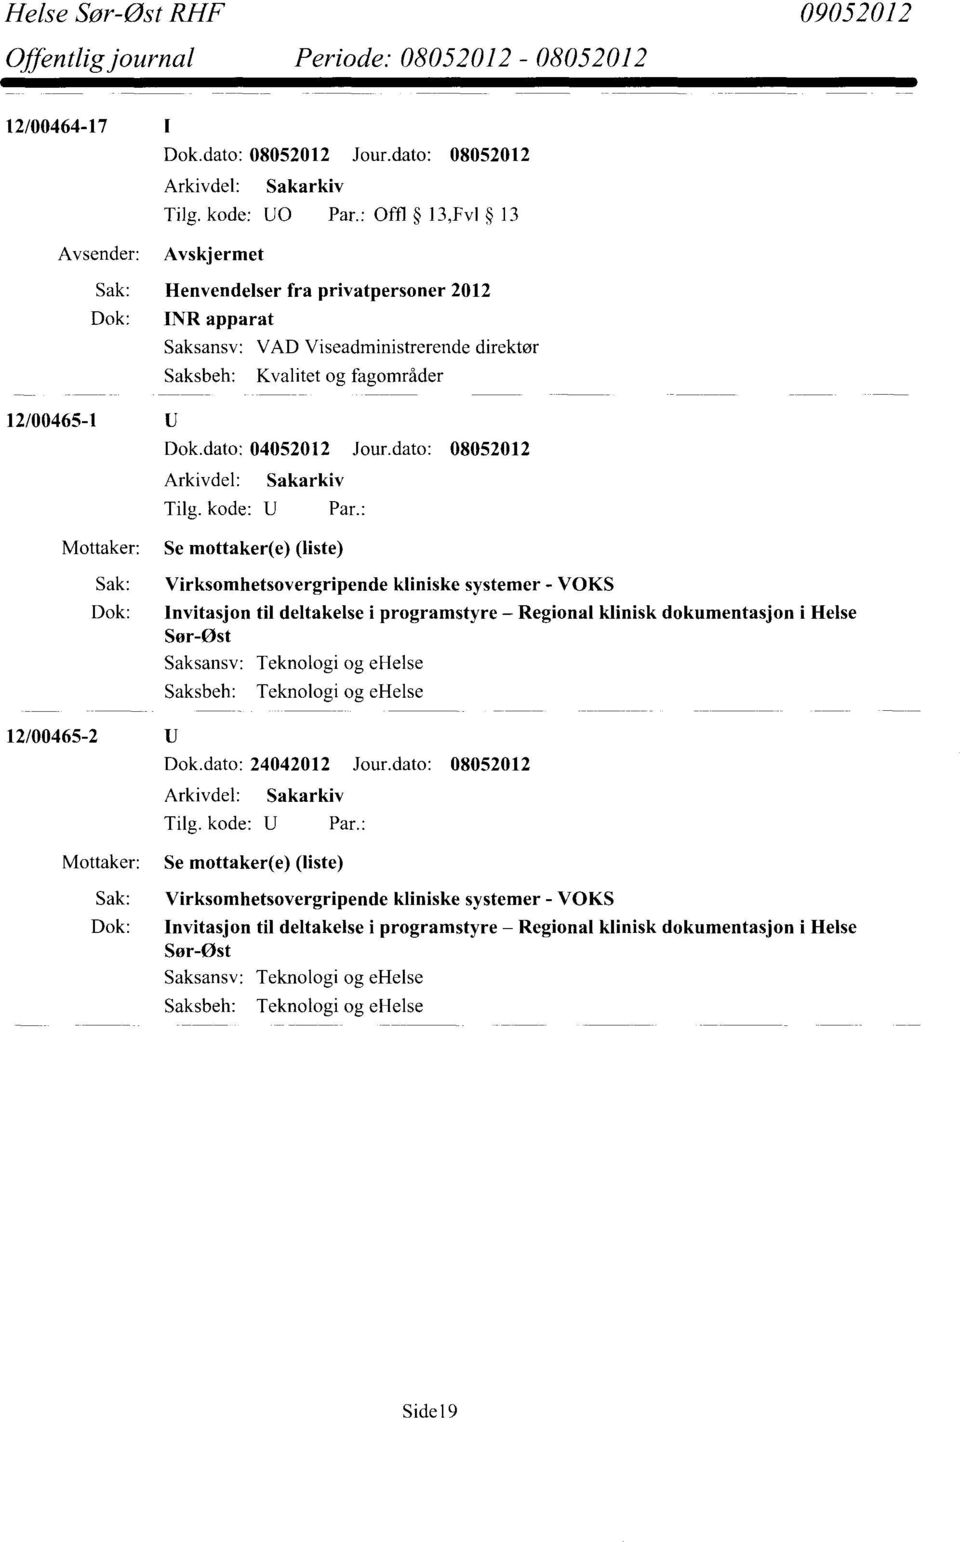 dato: 08052012 Se mottaker(e) (liste) Sak: Virksomhetsovergripende kliniske systemer - VOKS Dok: Invitasjon til deltakelse i programstyre Regional klinisk dokumentasjon i Helse Sør-Øst